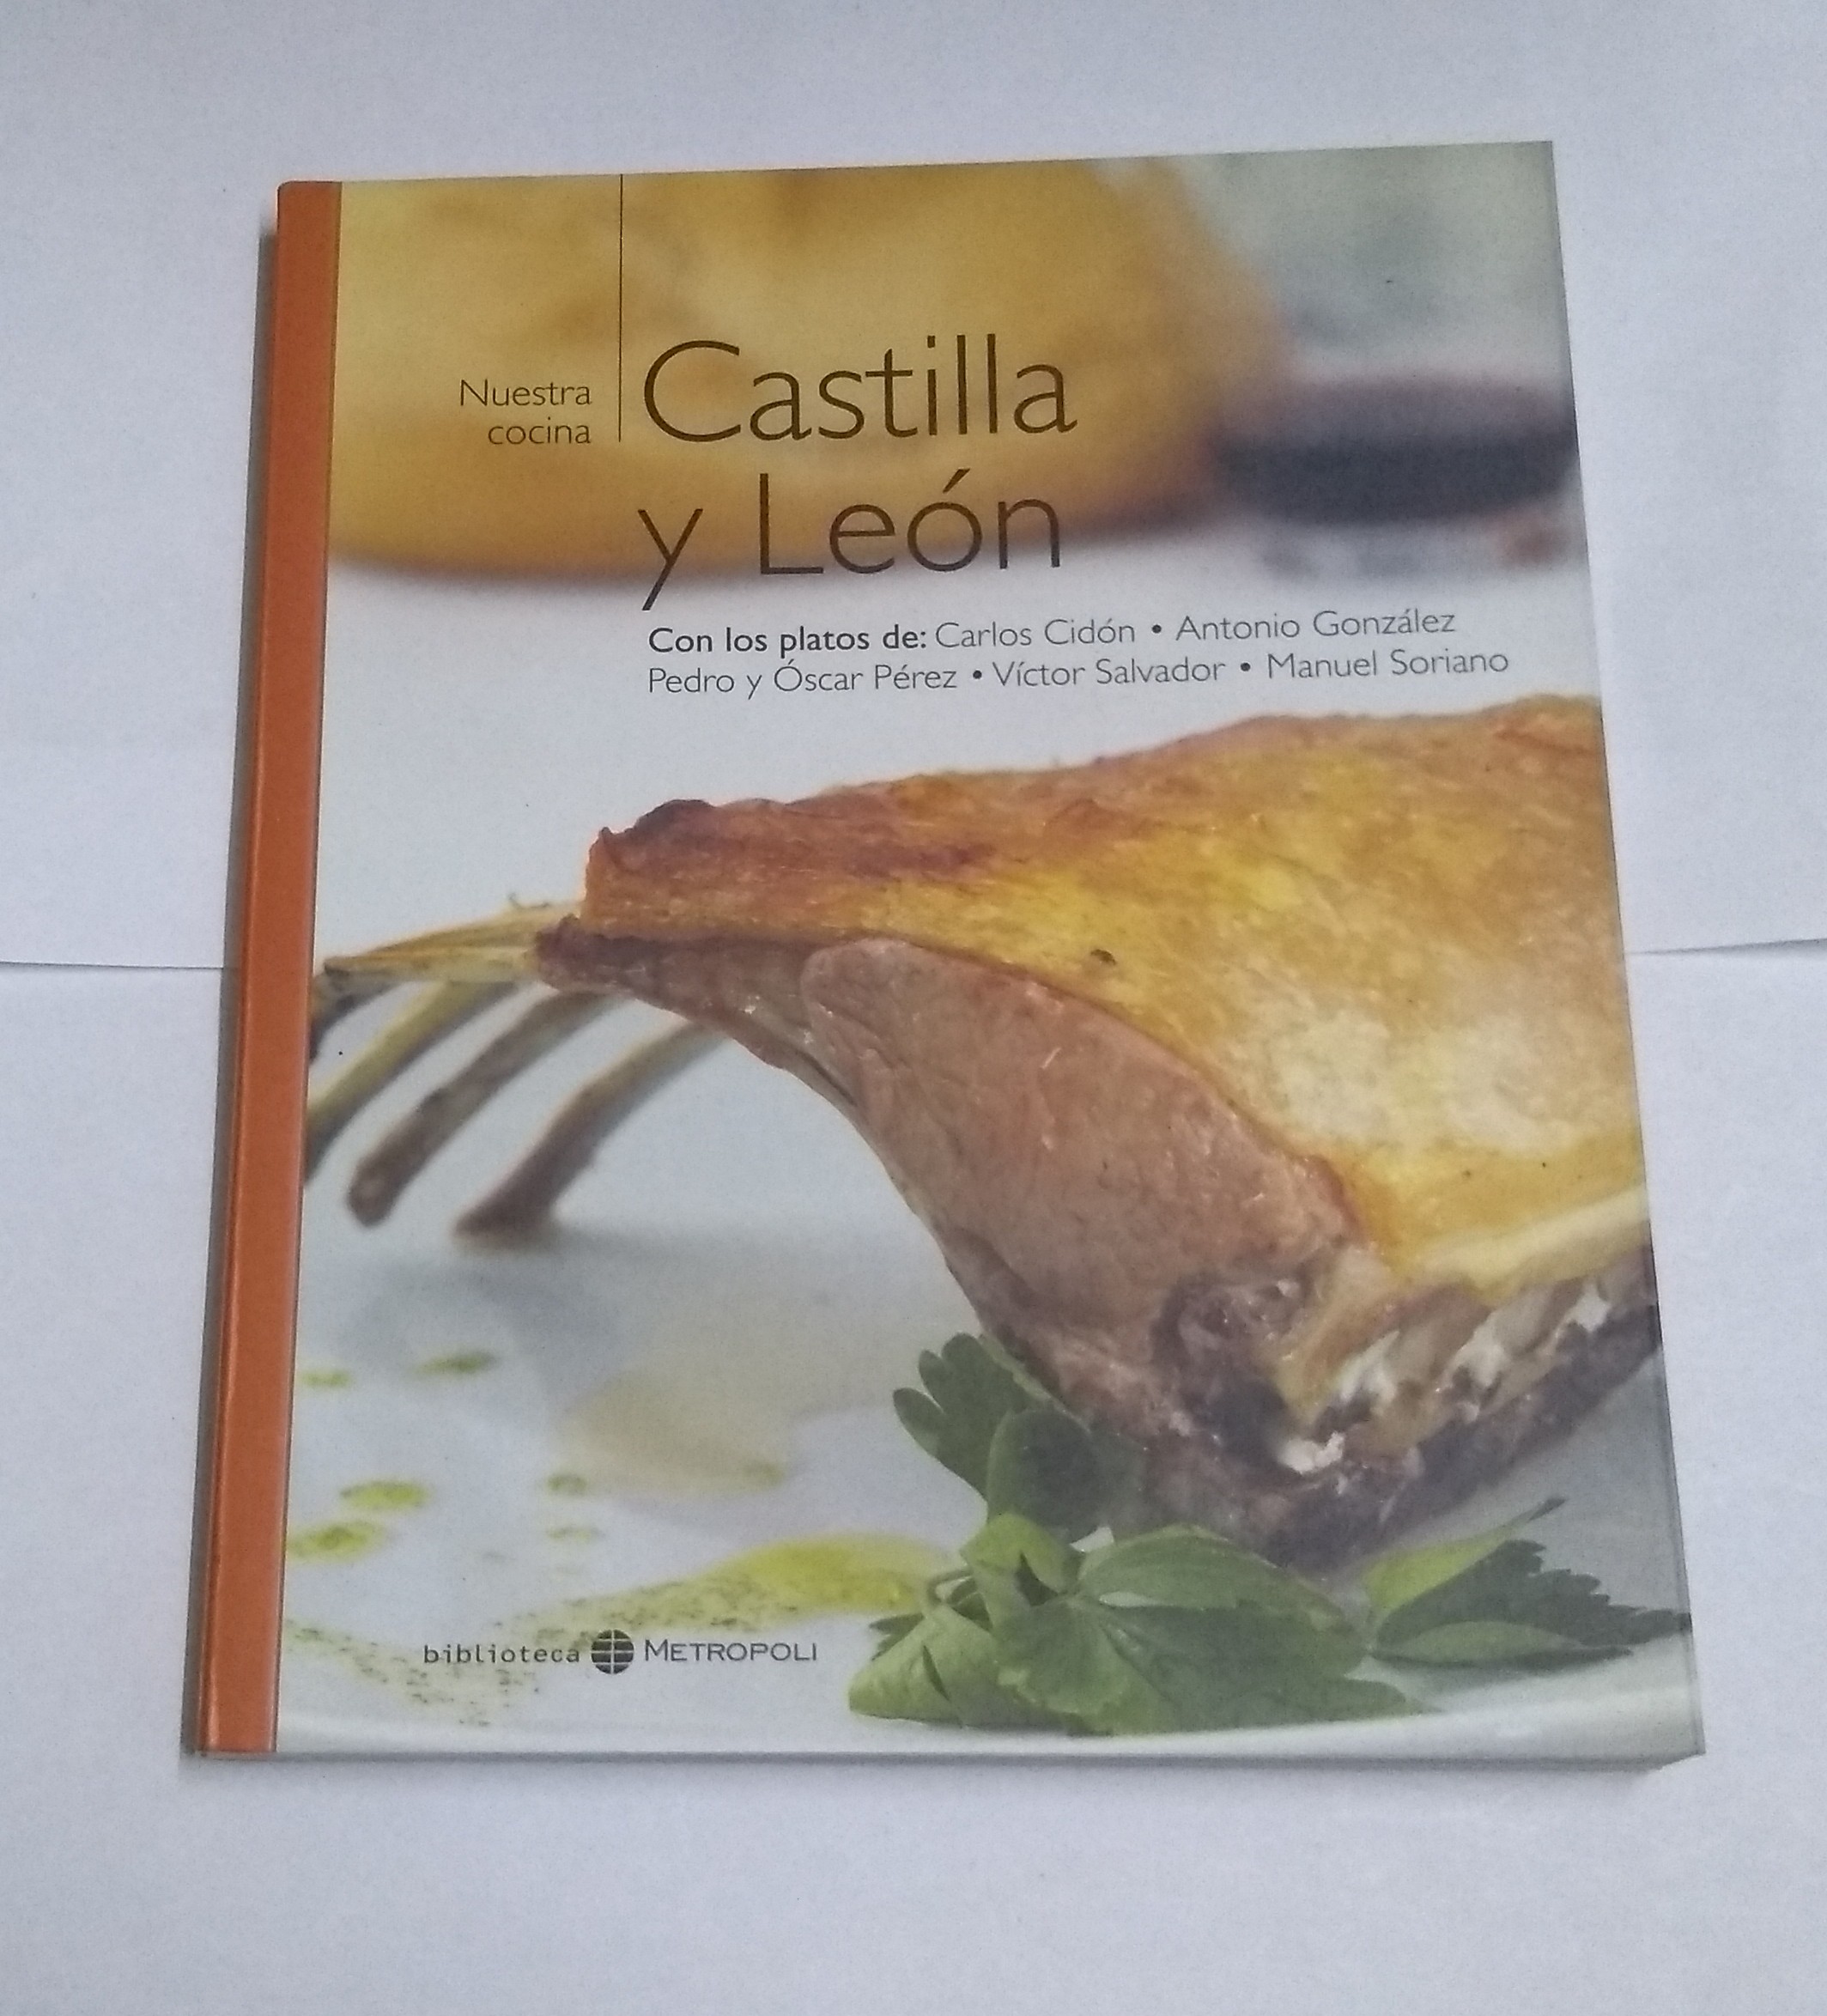 Nuestra cocina: Castilla y León